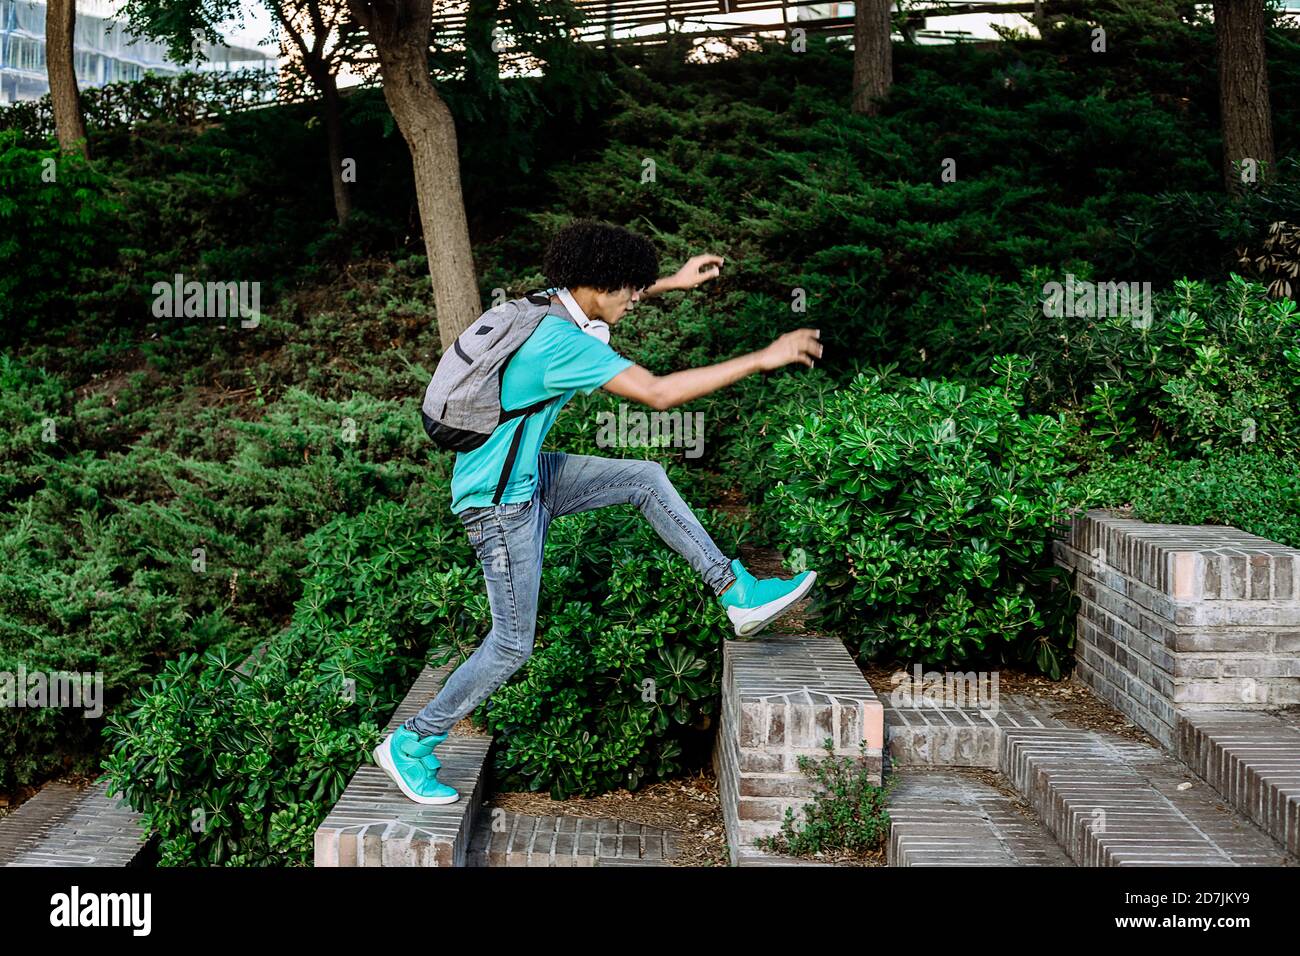 Un jeune homme sautant d'un banc à l'autre en public stationnement Banque D'Images